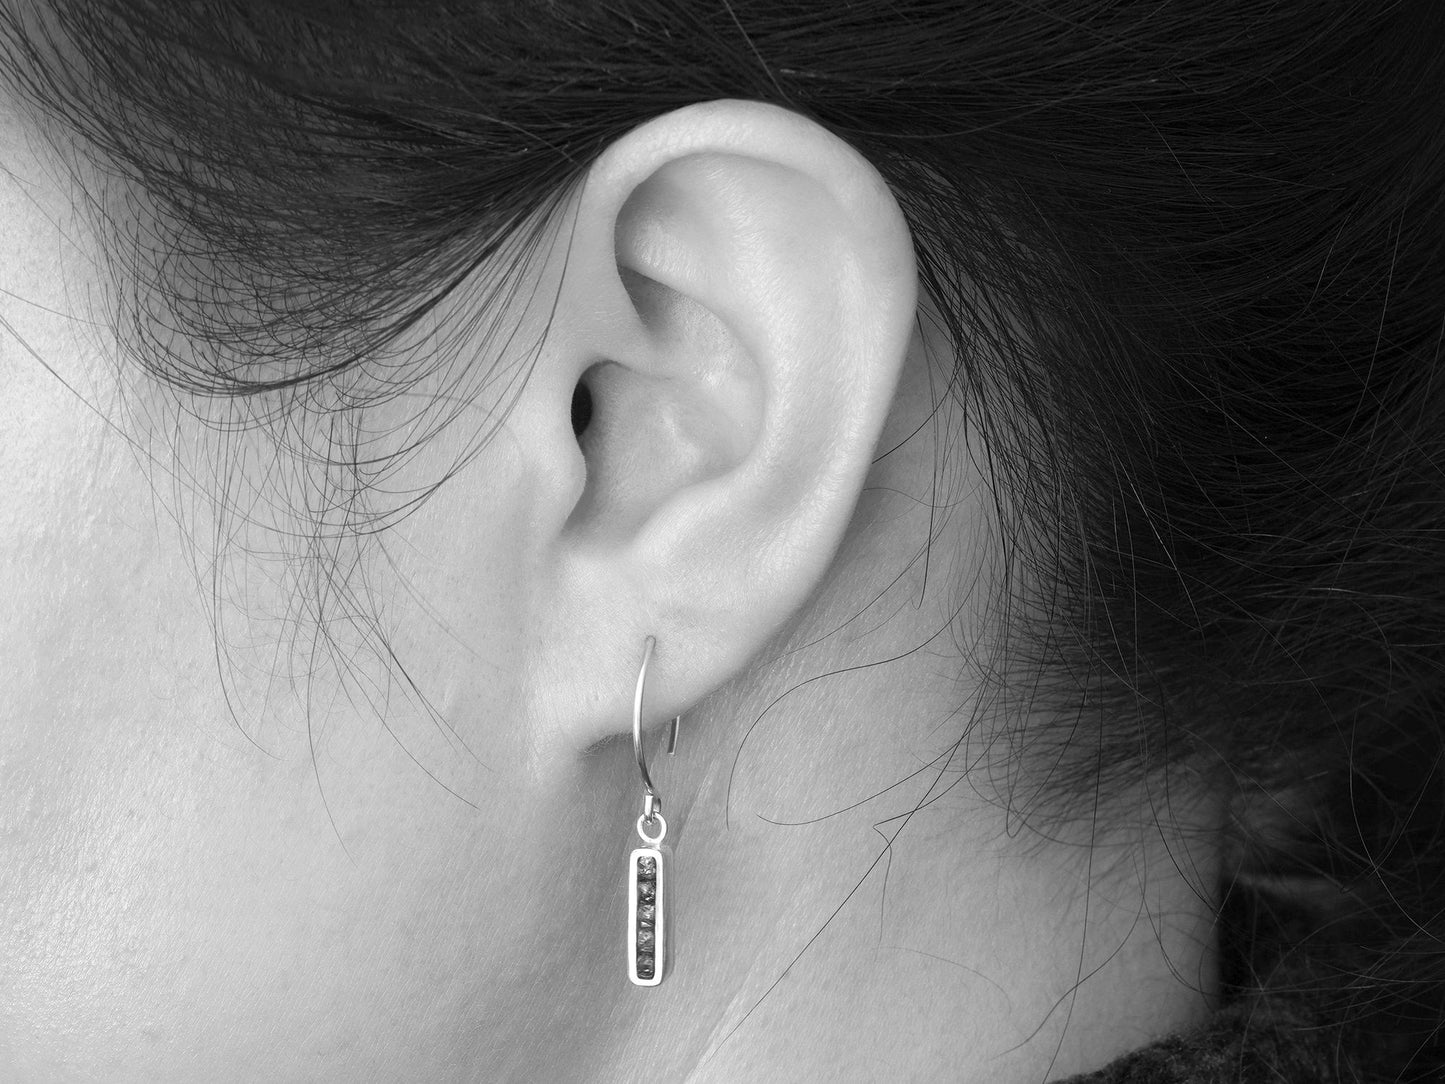 1ct Rough Diamond Earrings, Black Diamond Earrings, Channel Set Diamond Earrings